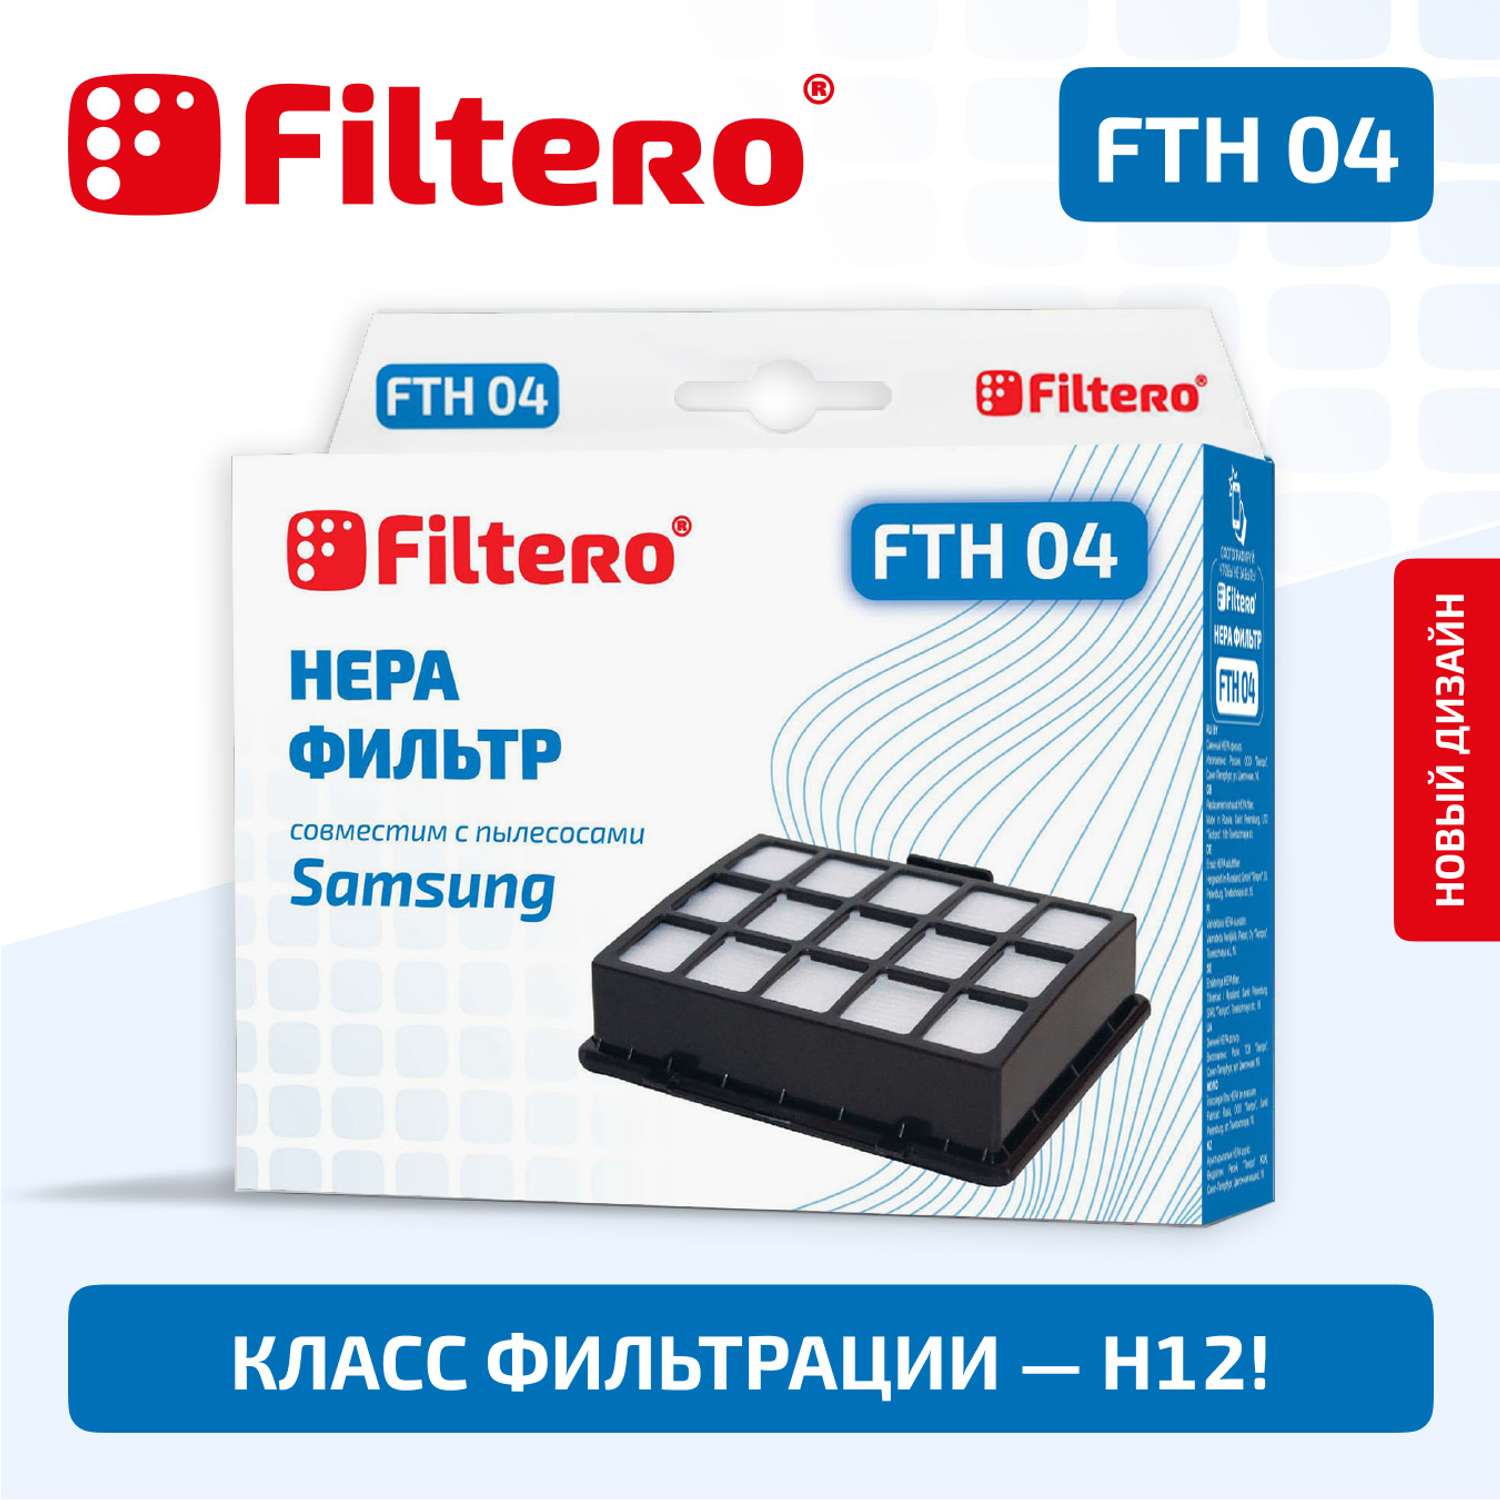 Фильтр HEPA Filtero FTH 04 Sam для пылесосов Samsung - фото 1